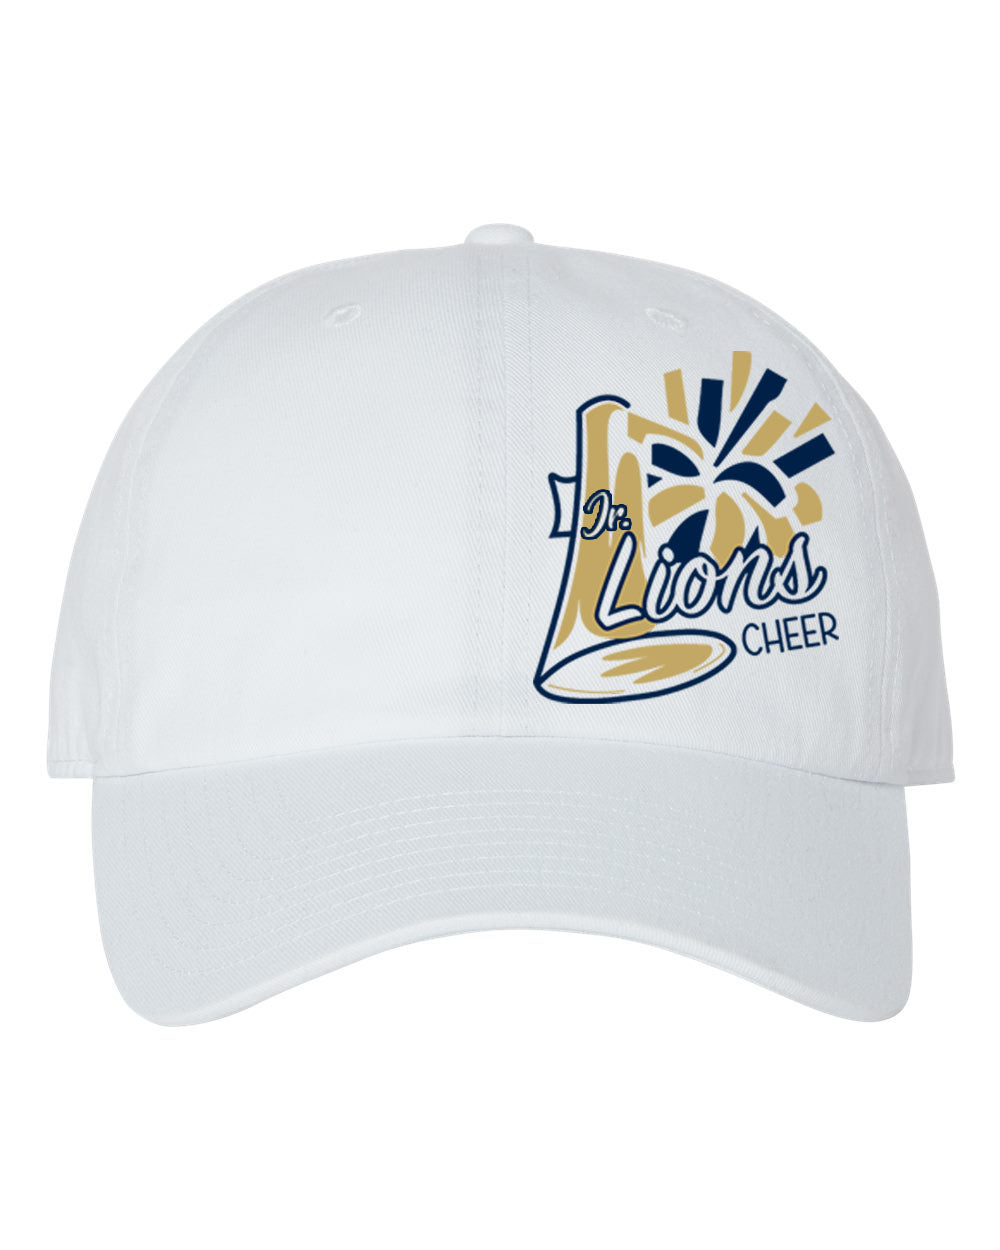 Lions Cheer design 2 Trucker Hat